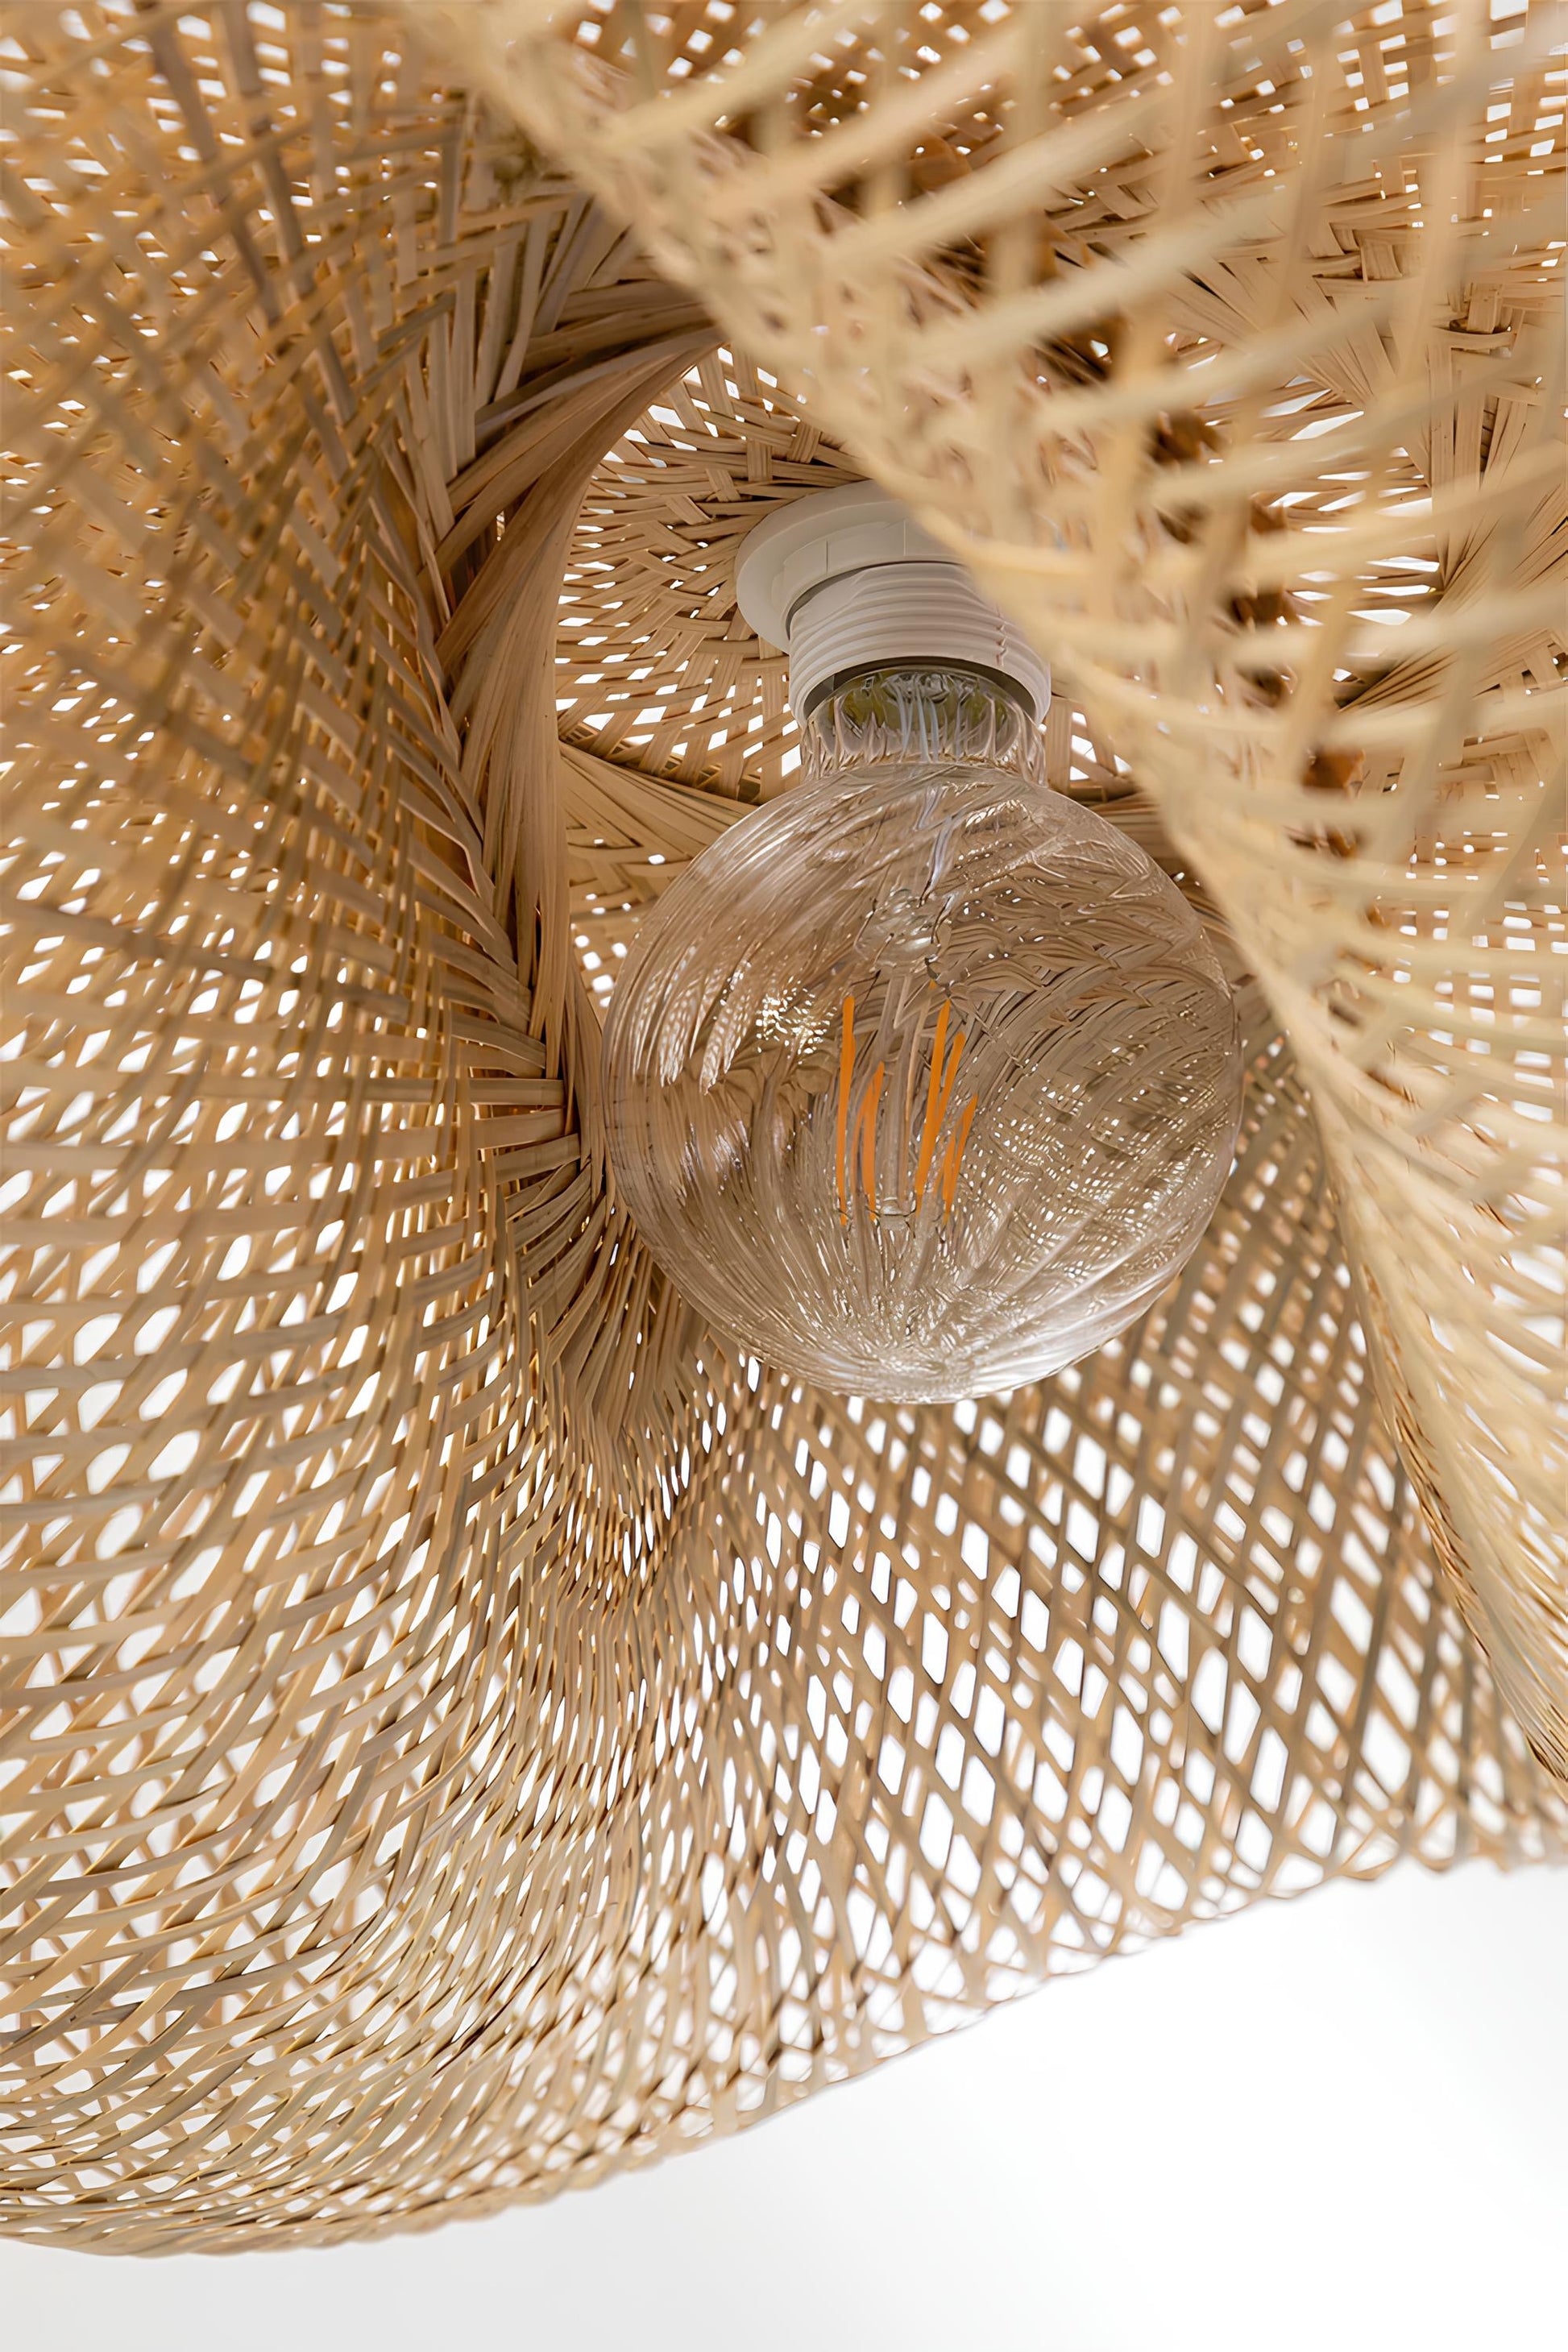 Bamboo Hanging lamp for Living Room | Rattan Pendant light | Cane ceiling light - Krisha - Akway